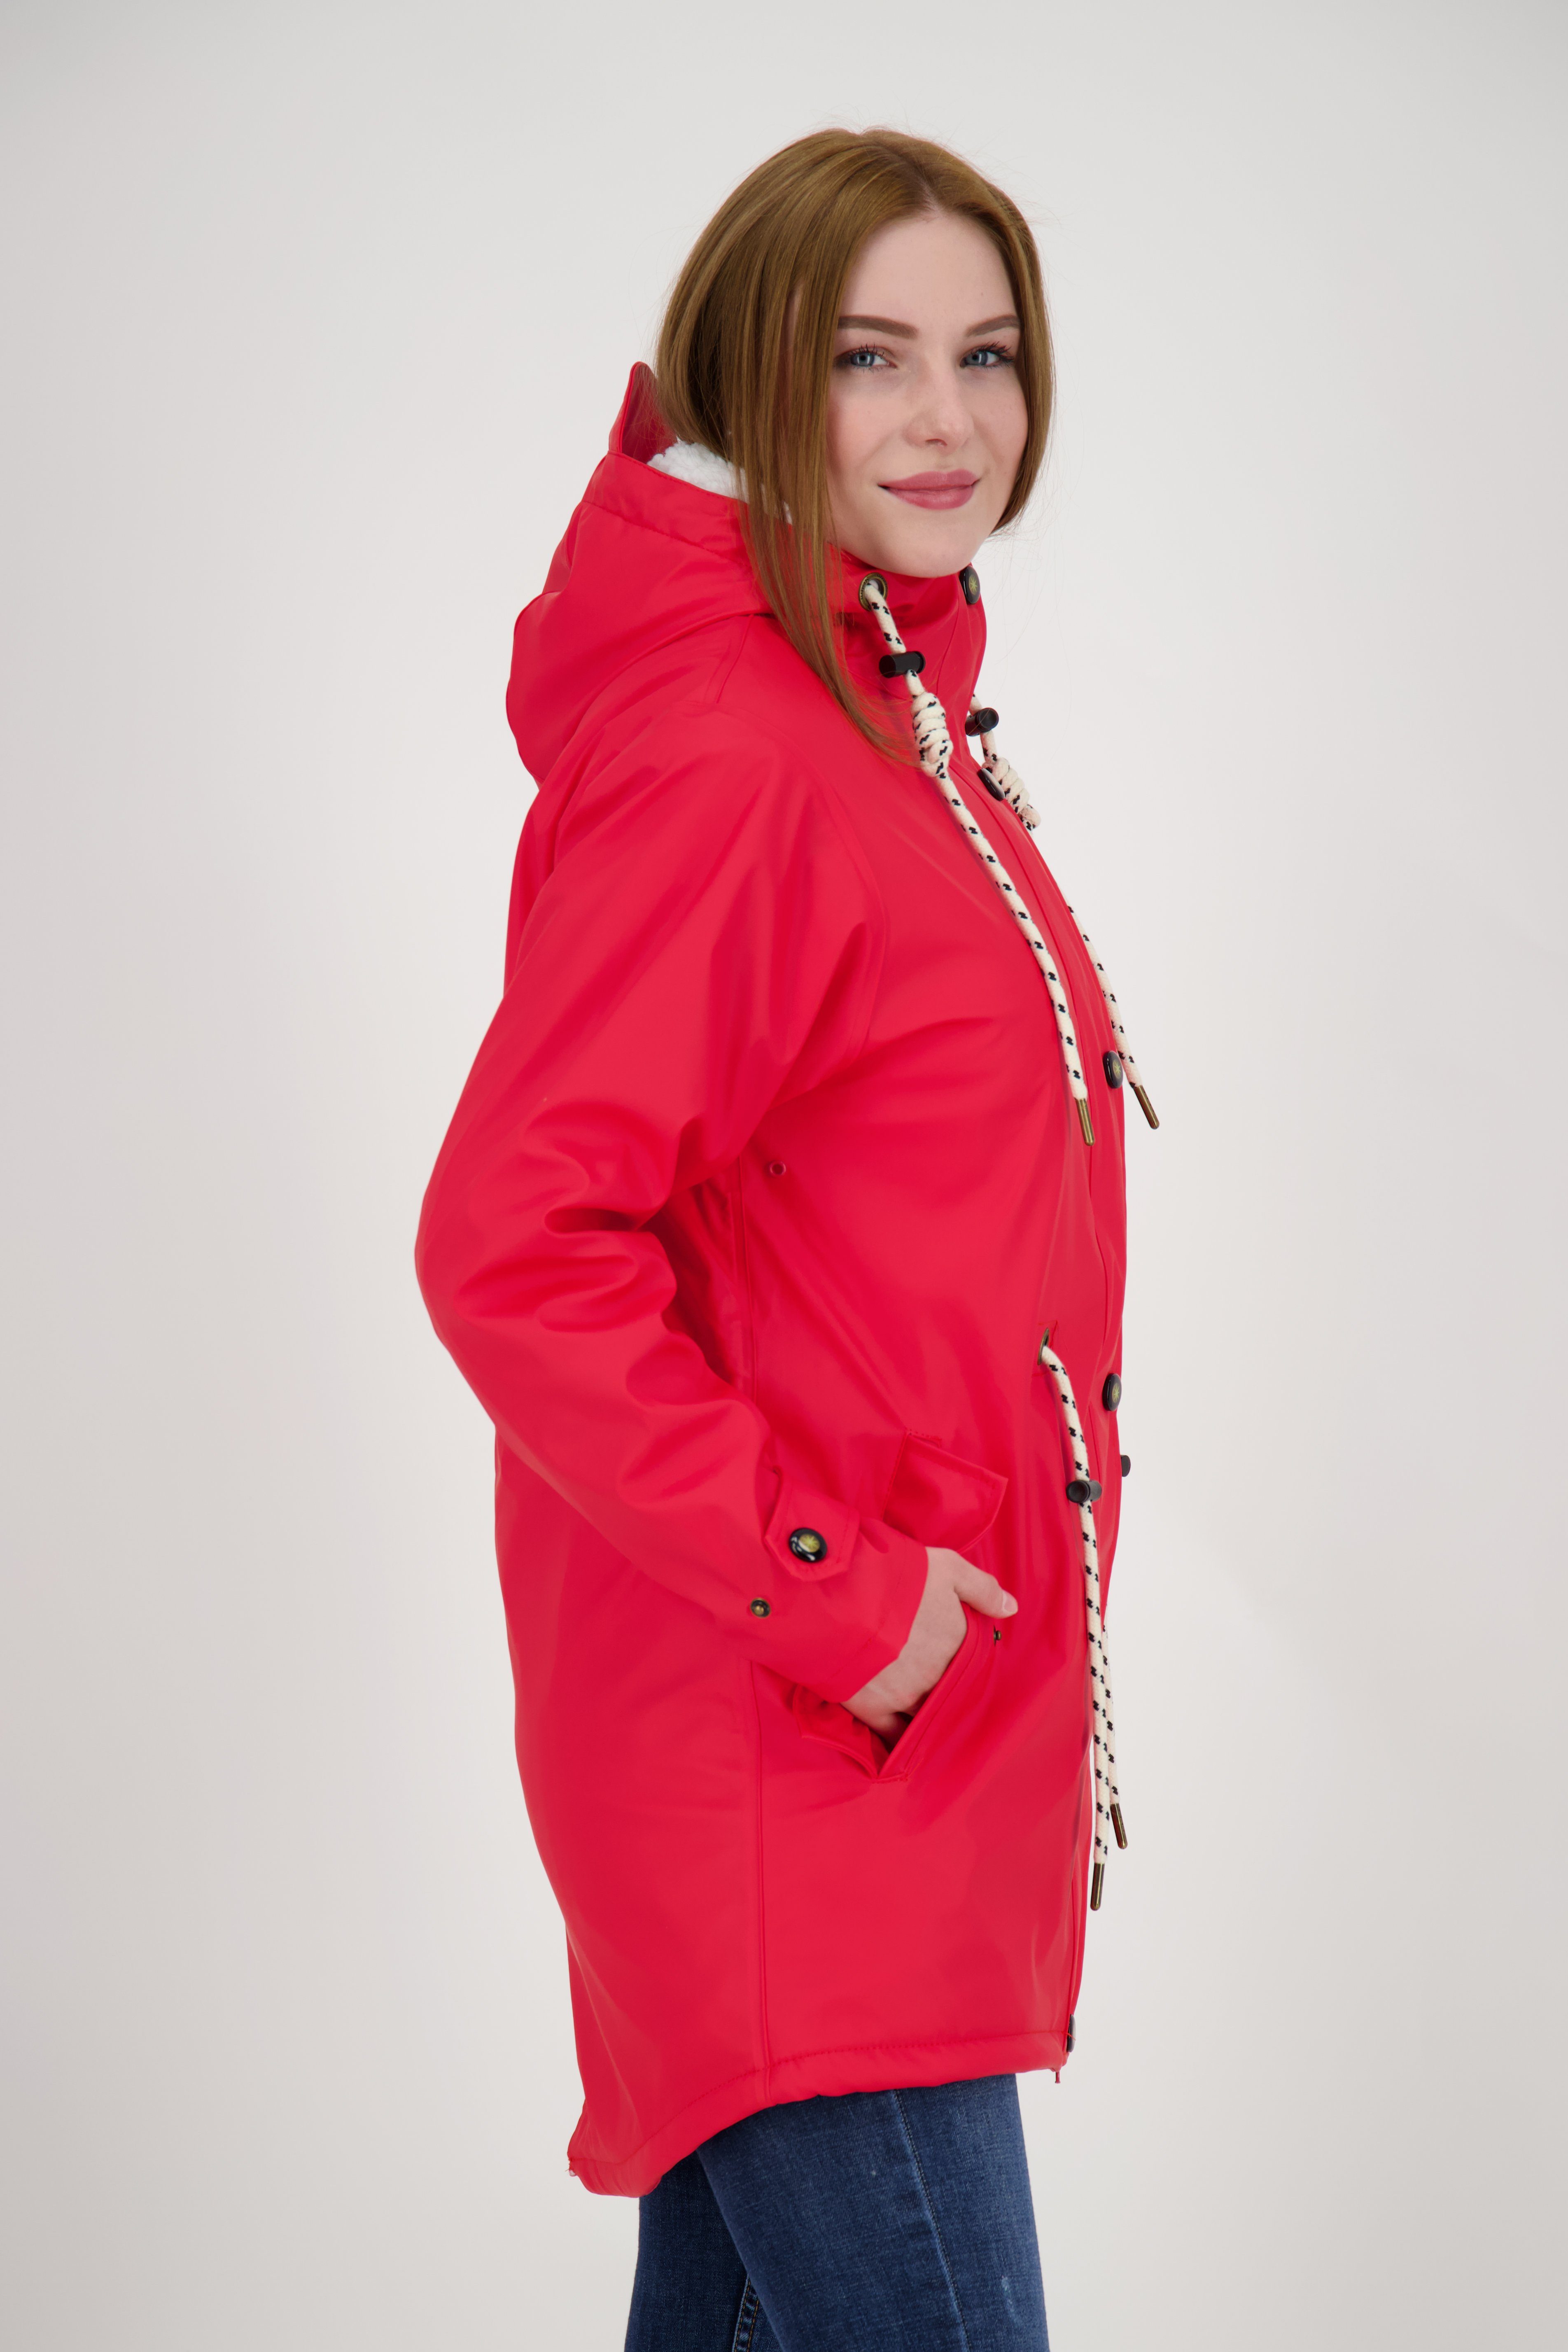 Größen Regenmantel in rot Active WOMEN DEPROC HALIFAX erhältlich auch Friesennerz NEW Großen